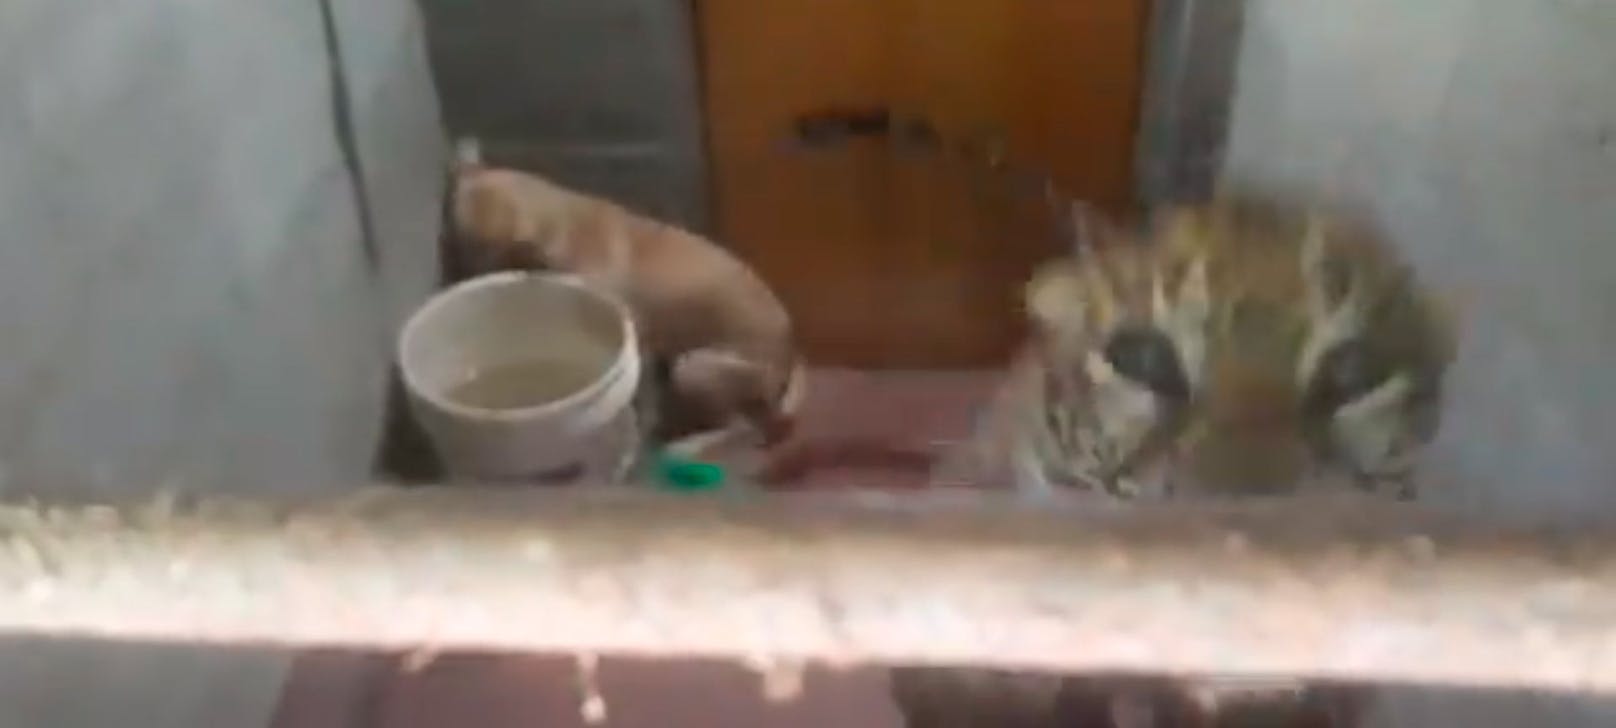 Eine Nacht und einen halben Tag verbrachte Hund "Bollu" mit einem Leoparden auf einer Toilette.